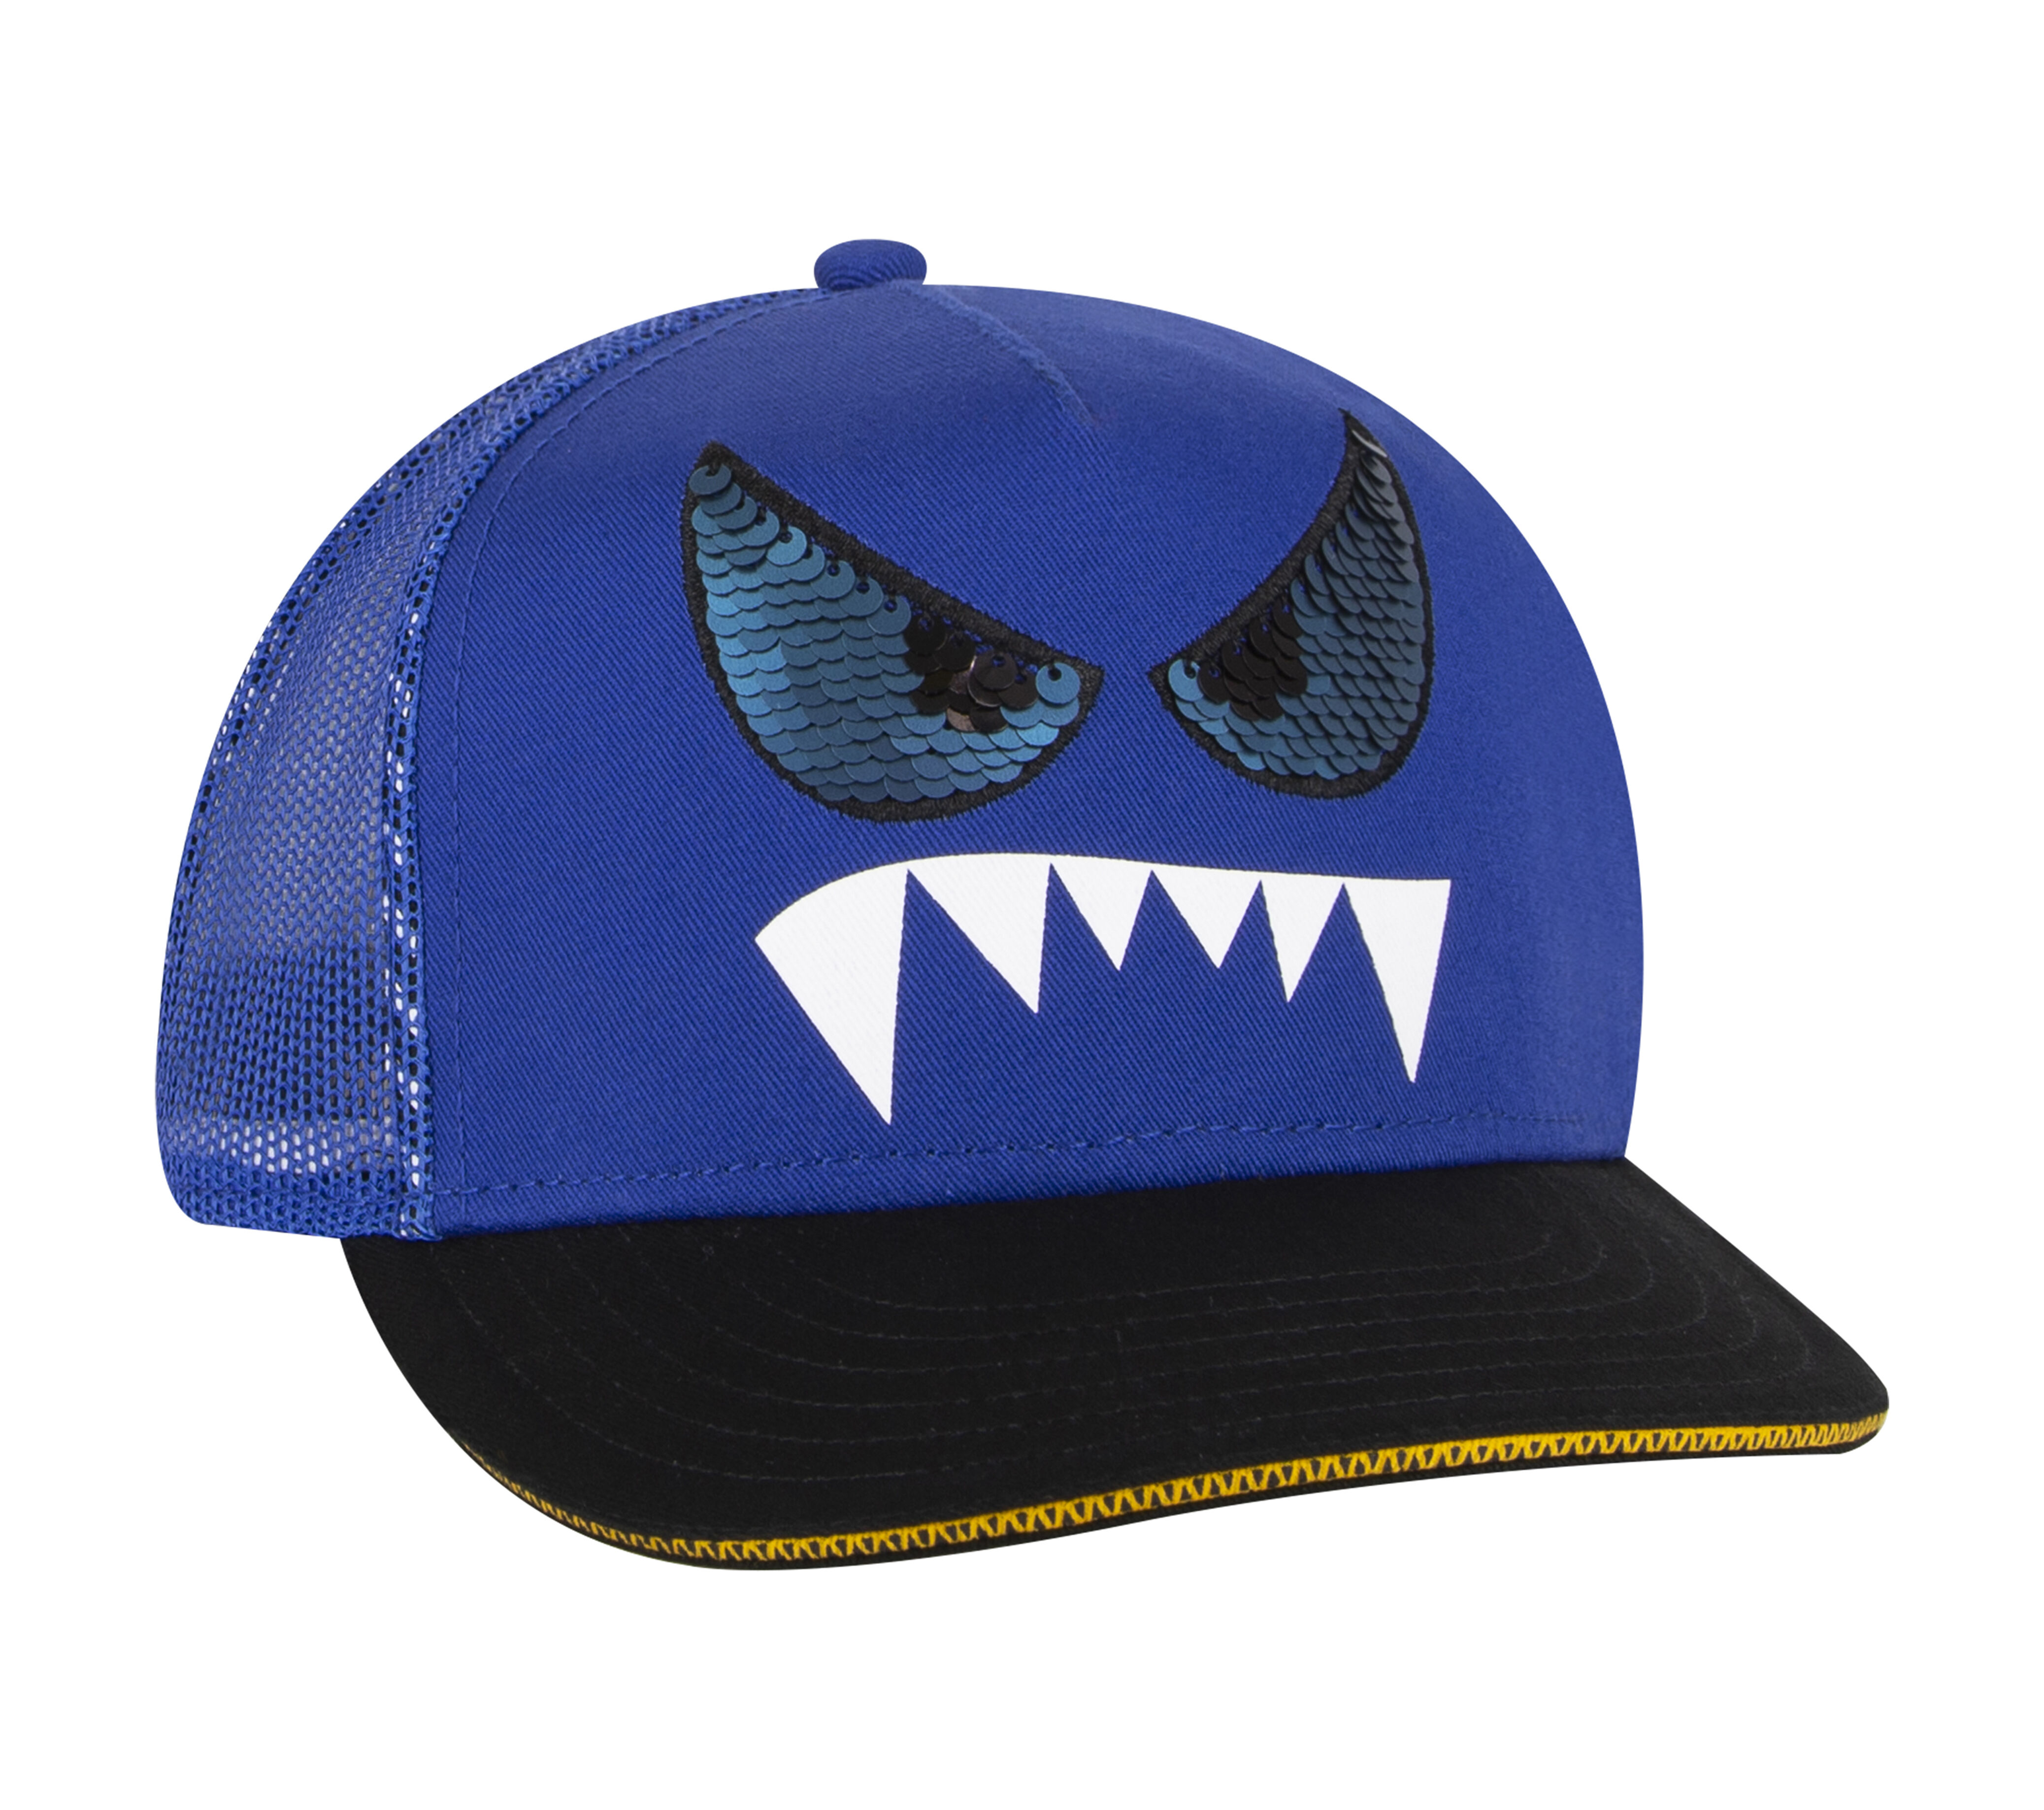 Skechers Monster Eyes Trucker Hat